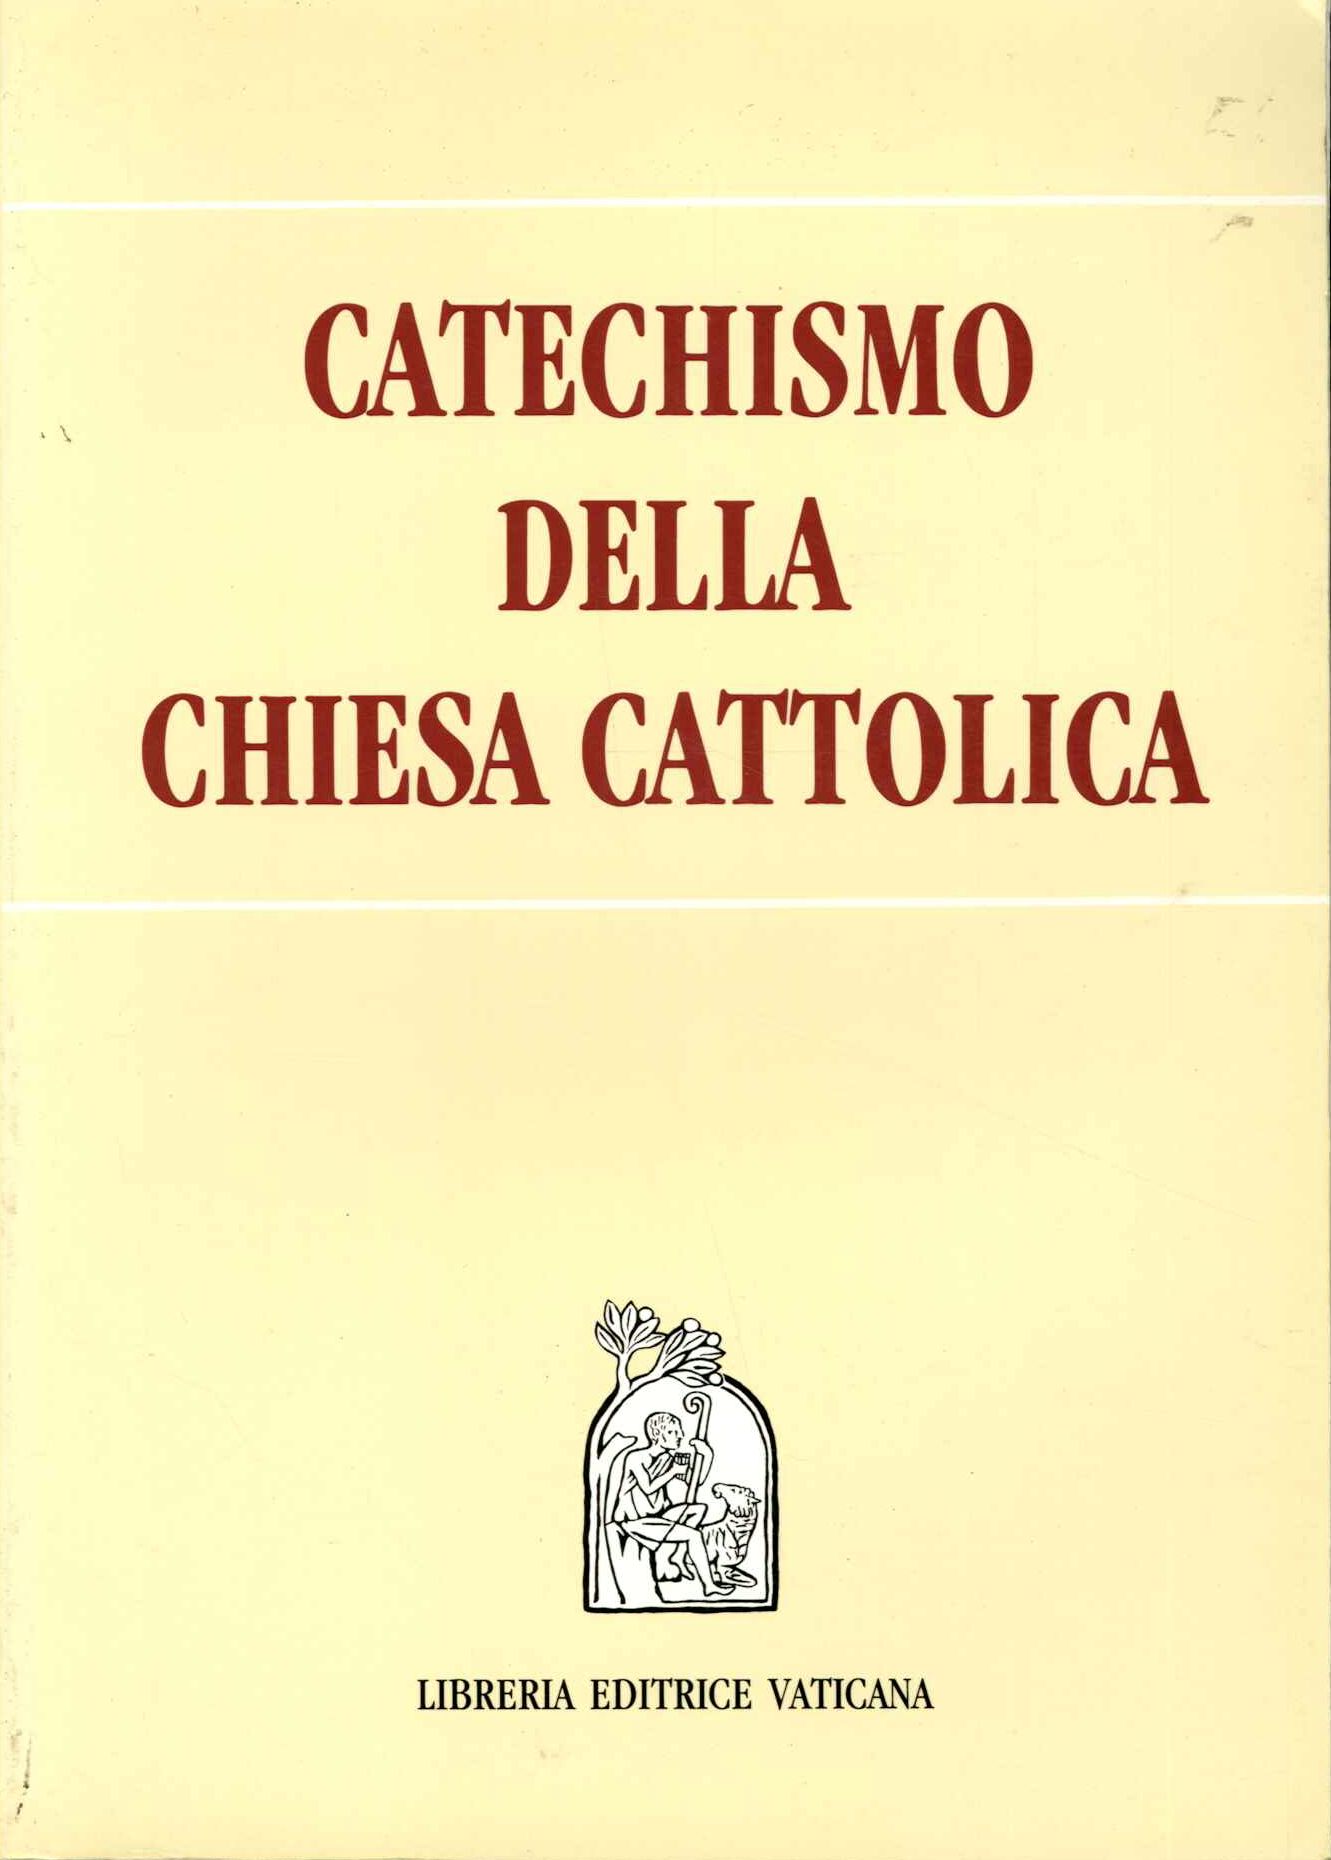 Catechismo della Chiesa cattolica